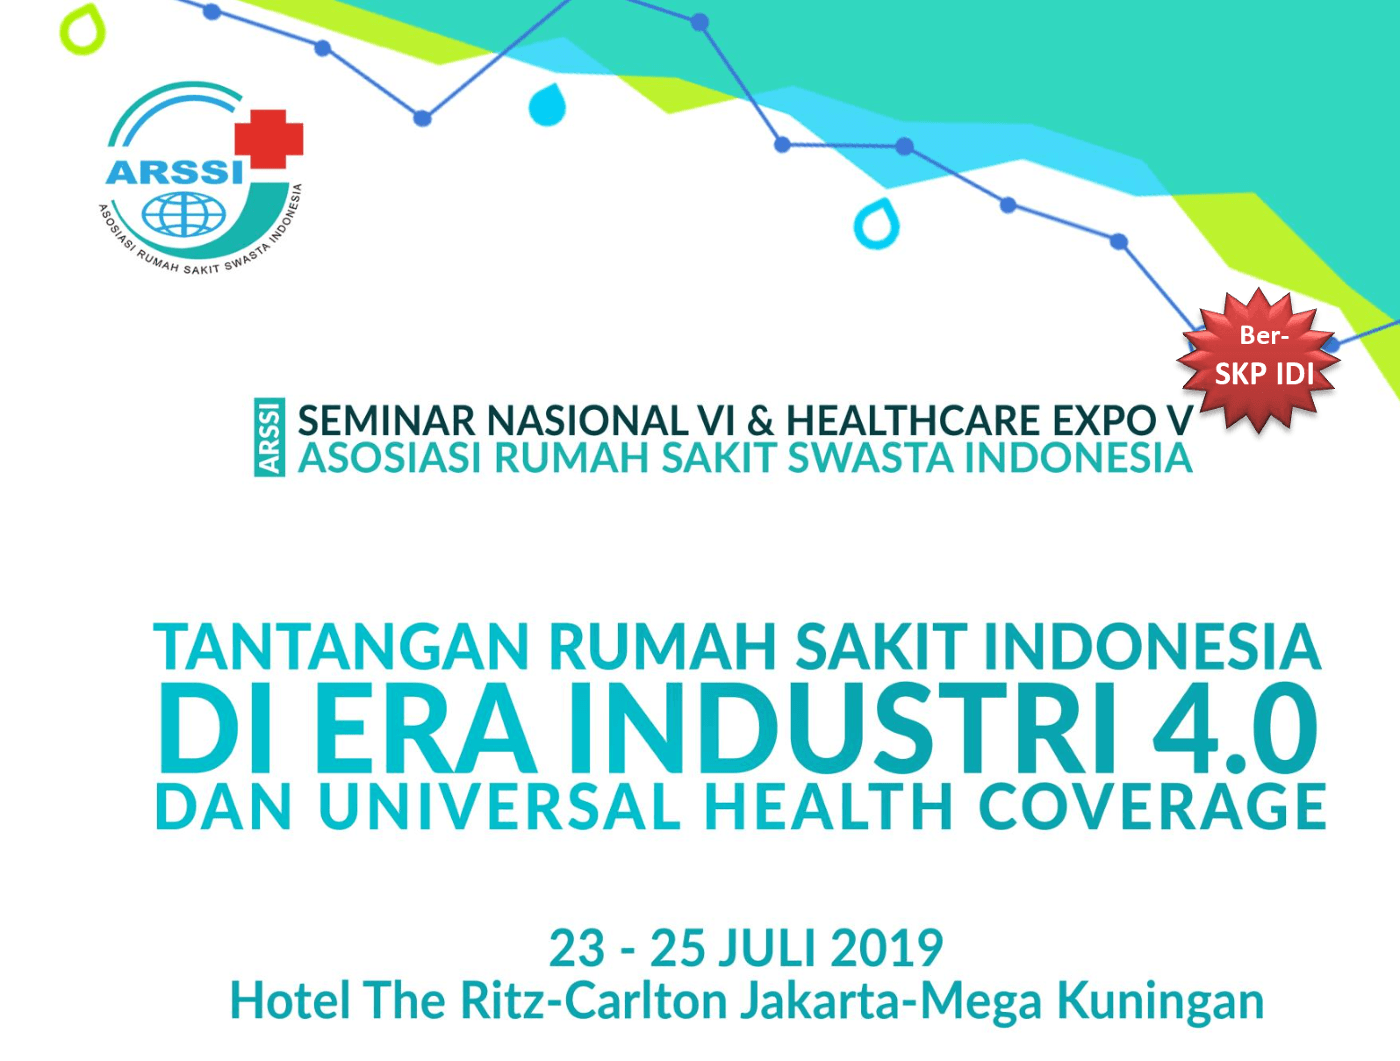 Seminar Nasional VI & Healthcare Expo V Asosiasi Rumah Sakit Swasta Indonesia Dengan tema “ Tantangan Rumah Sakit Indonesia di Era Industri 4.0 dan Universal Health Coverage” 23-25 Juli 2019 d